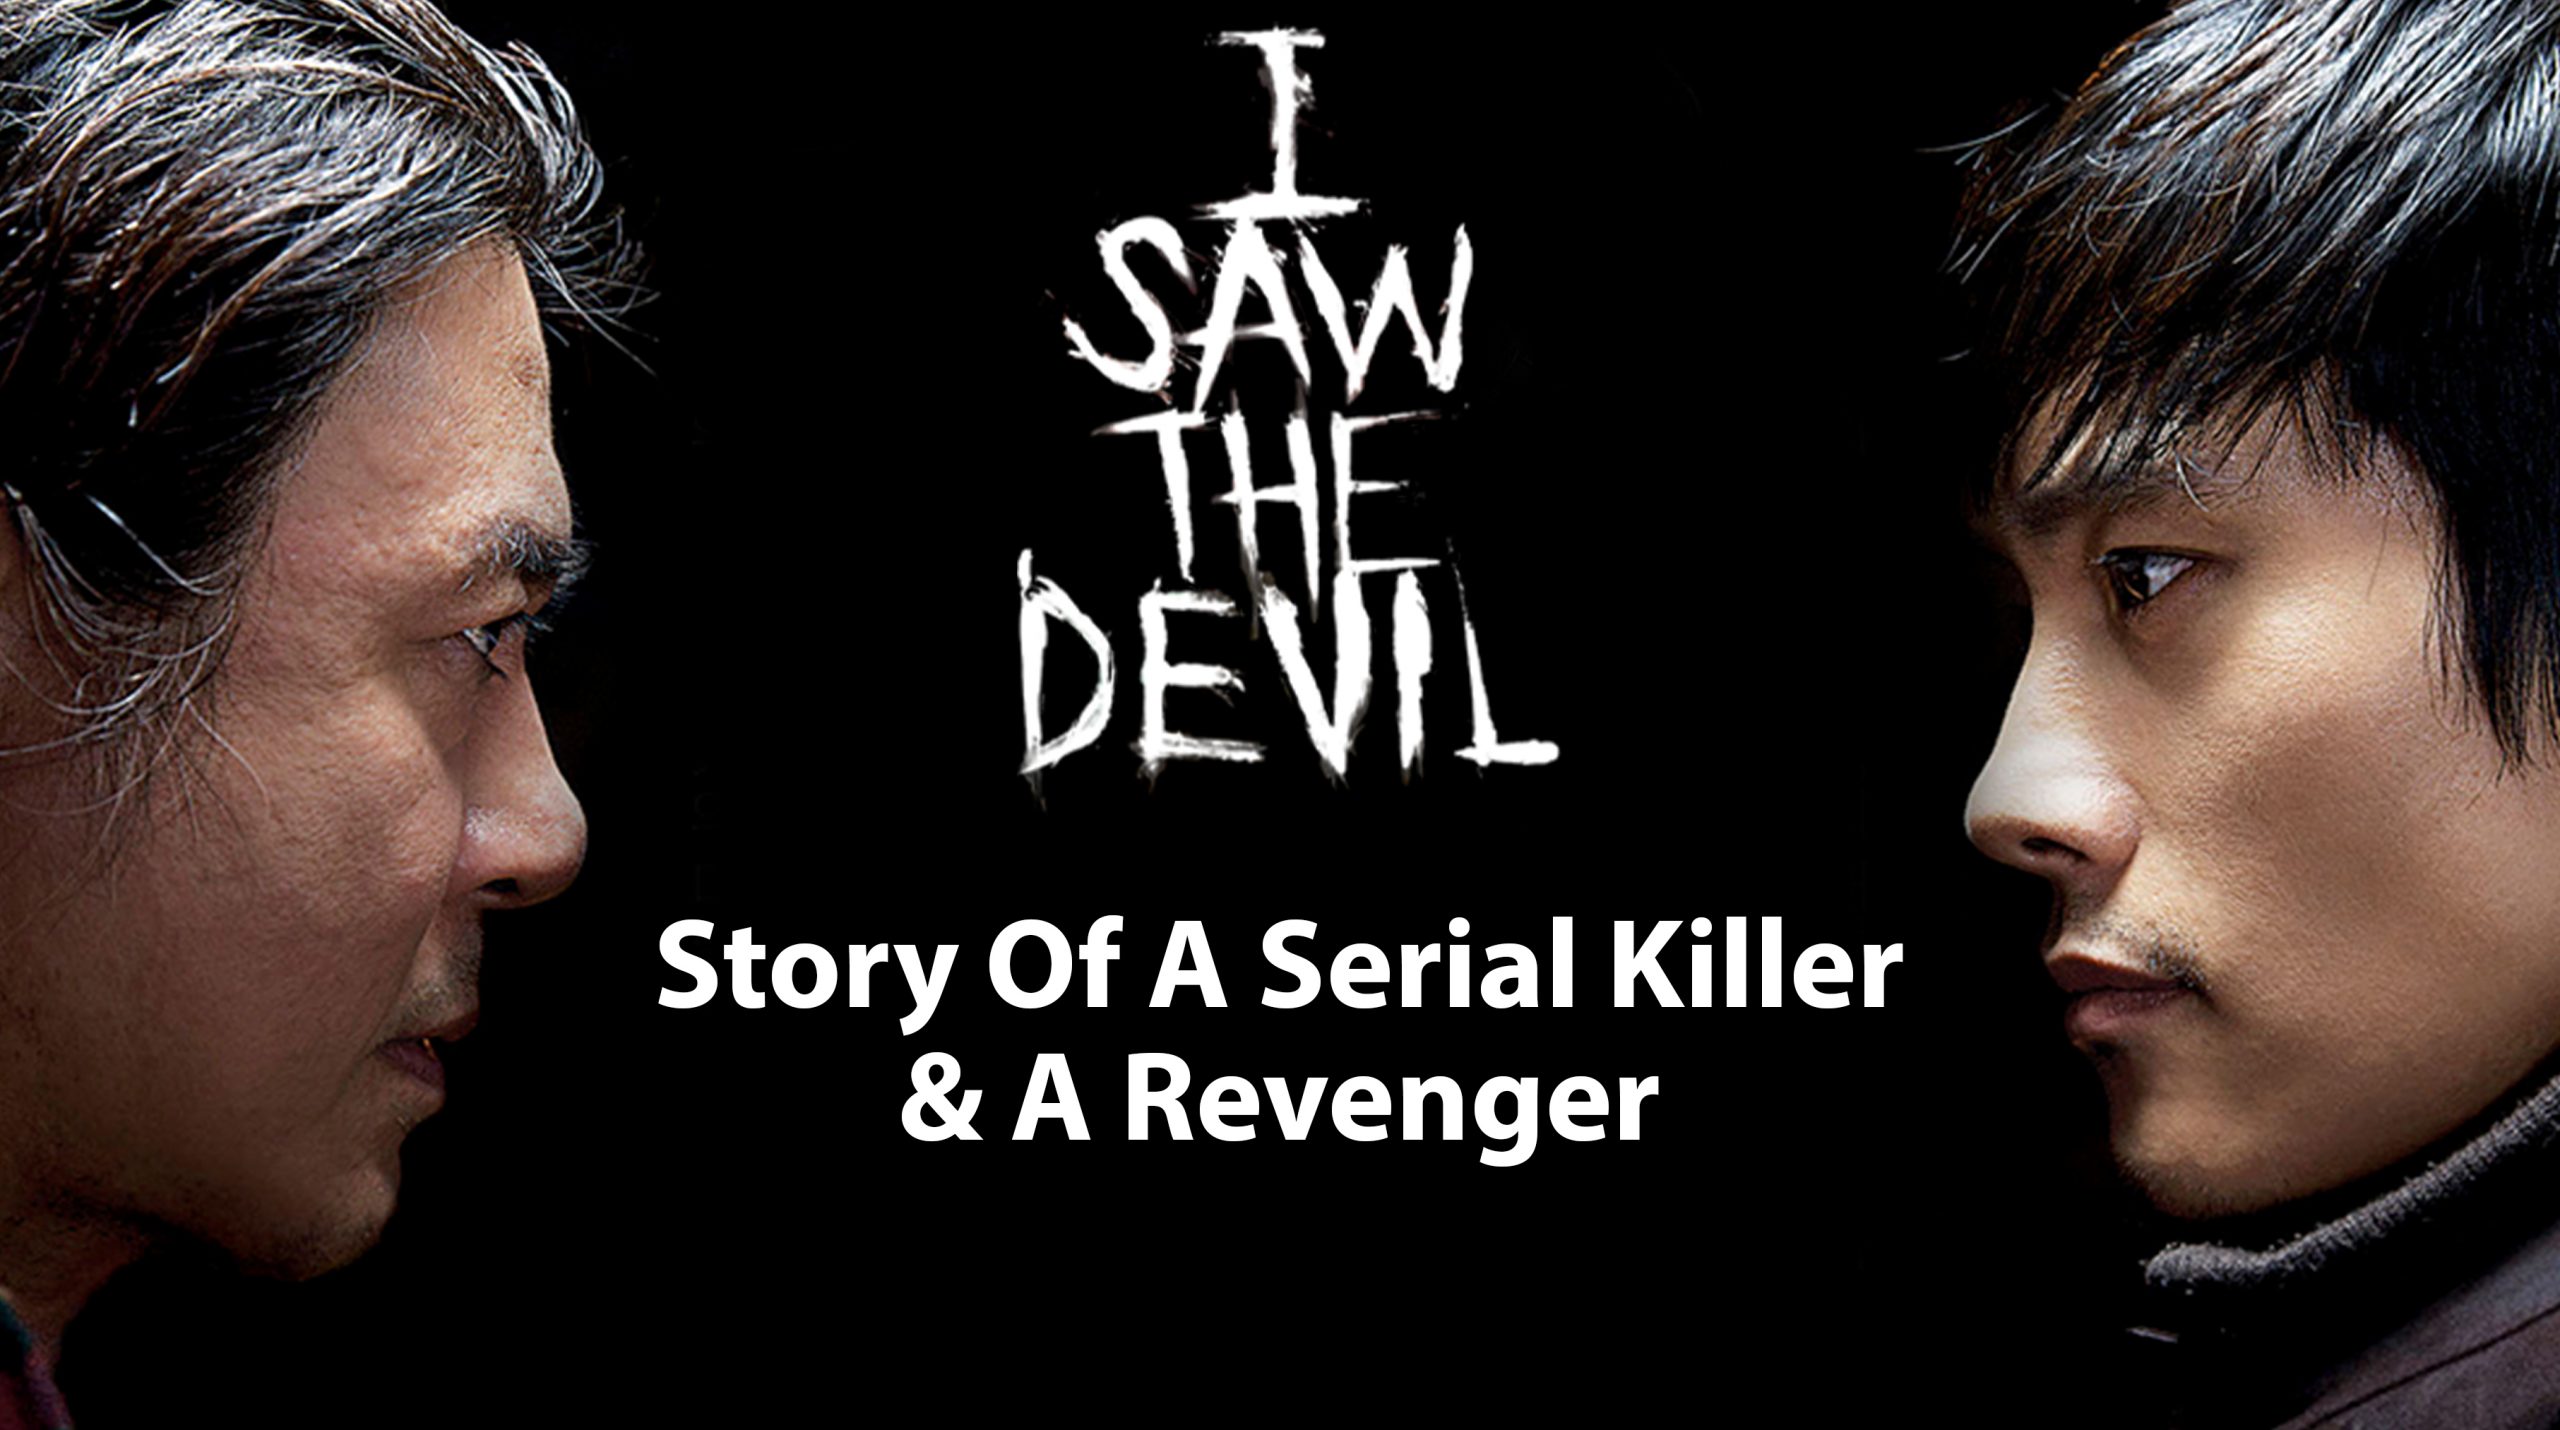 I Saw The Devil: Story Of A Serial Killer & A Revenger